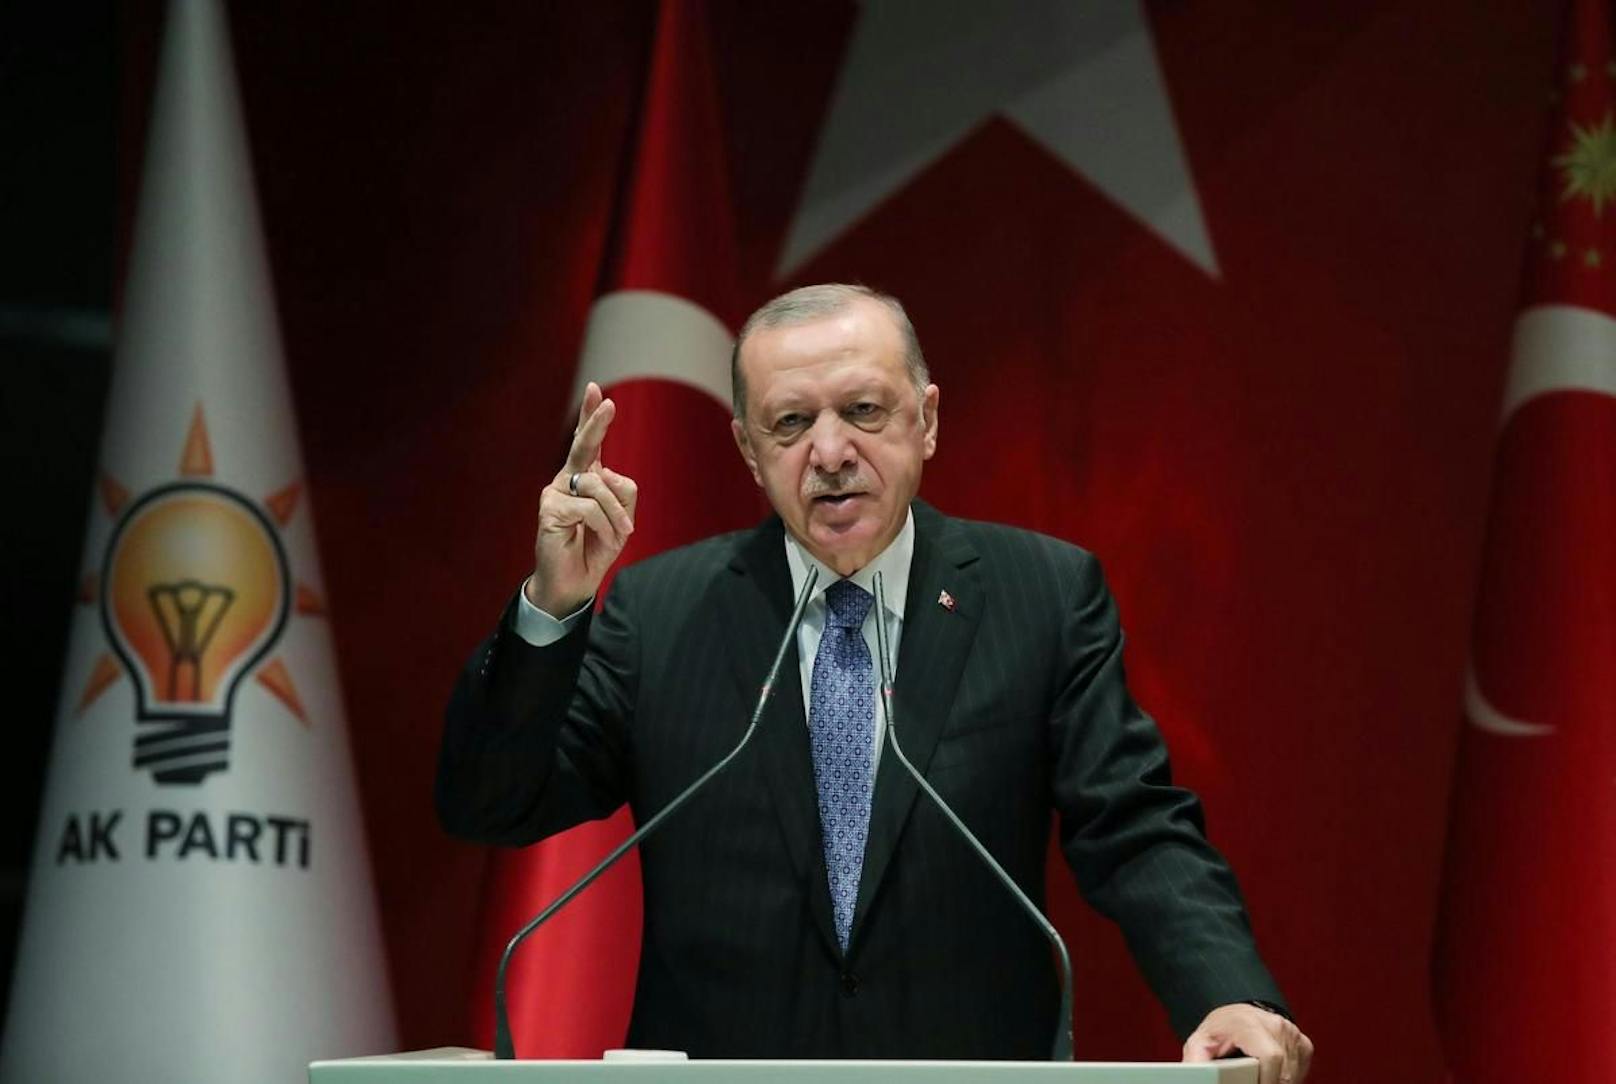 Erdogan spricht von einem "Komplott gegen die türkische Wirtschaft".